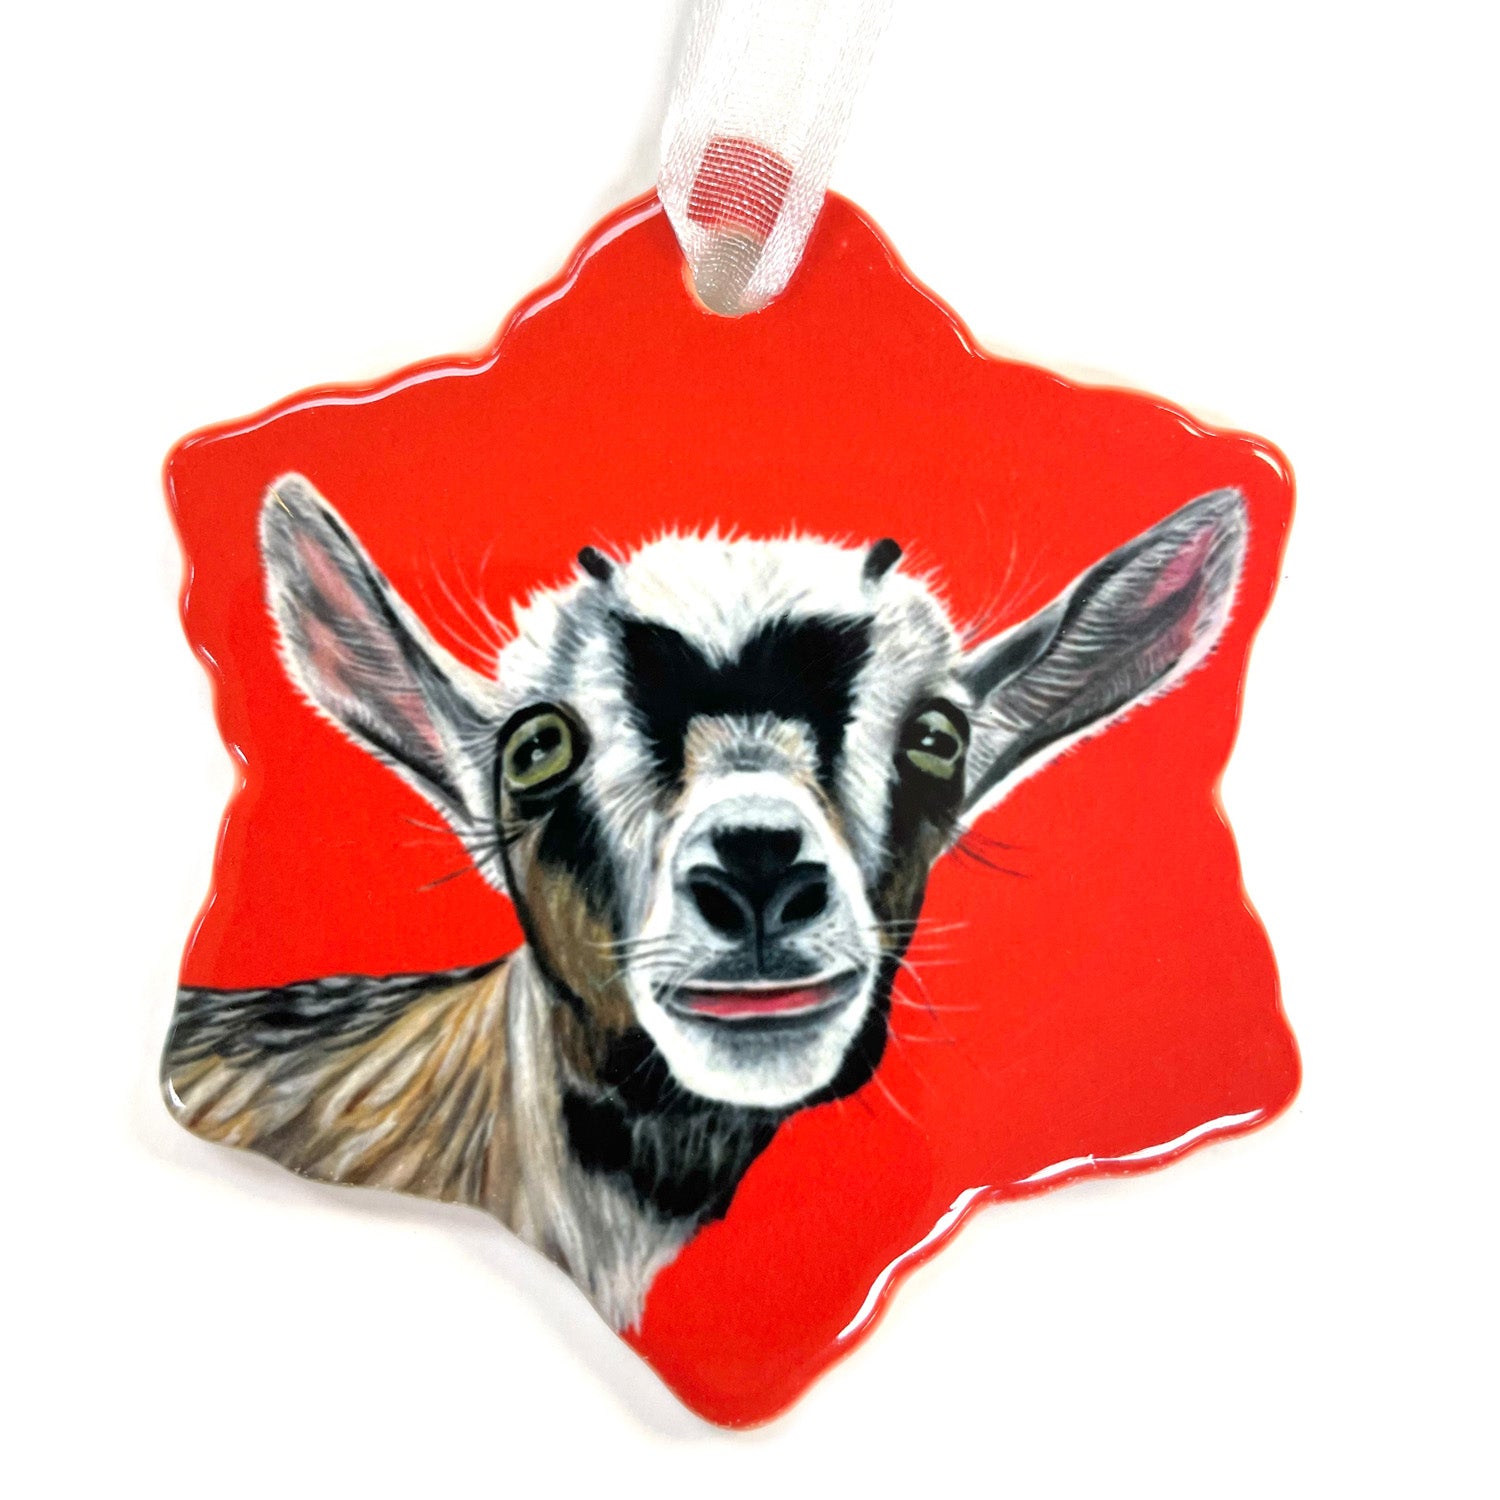 Goat Porcelain Holiday Ornament – Ingrid